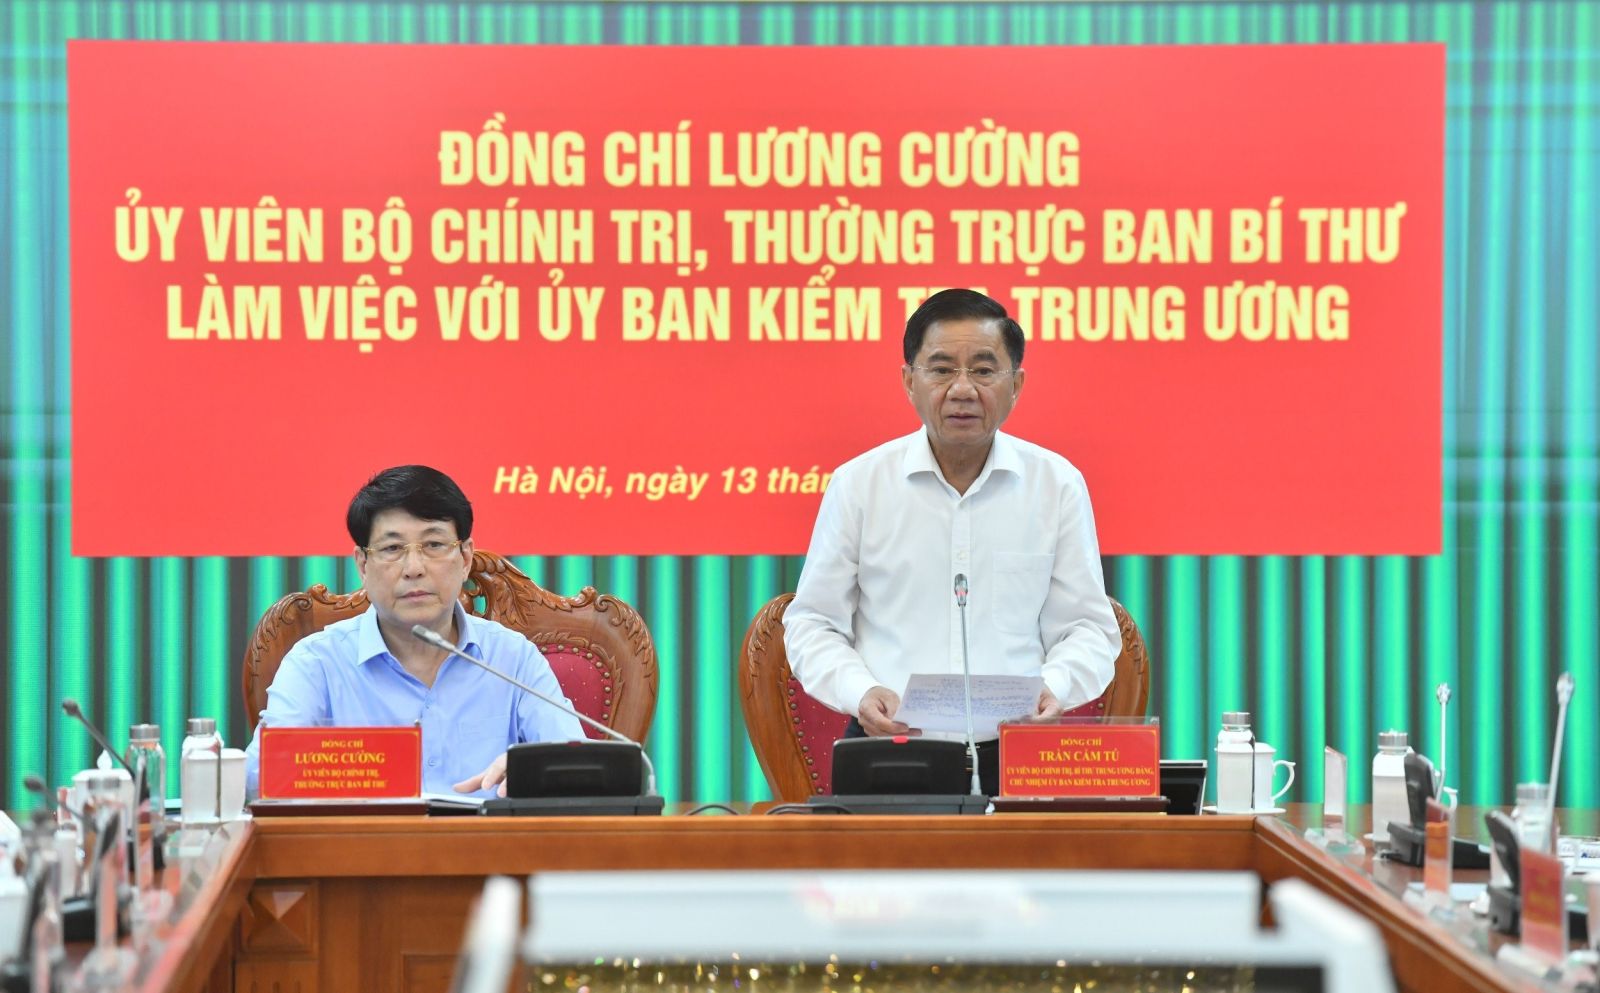 Đồng chí Lương Cường, Ủy viên Bộ Chính trị, Thường trực Ban Bí thư làm việc với UBKT Trung ương